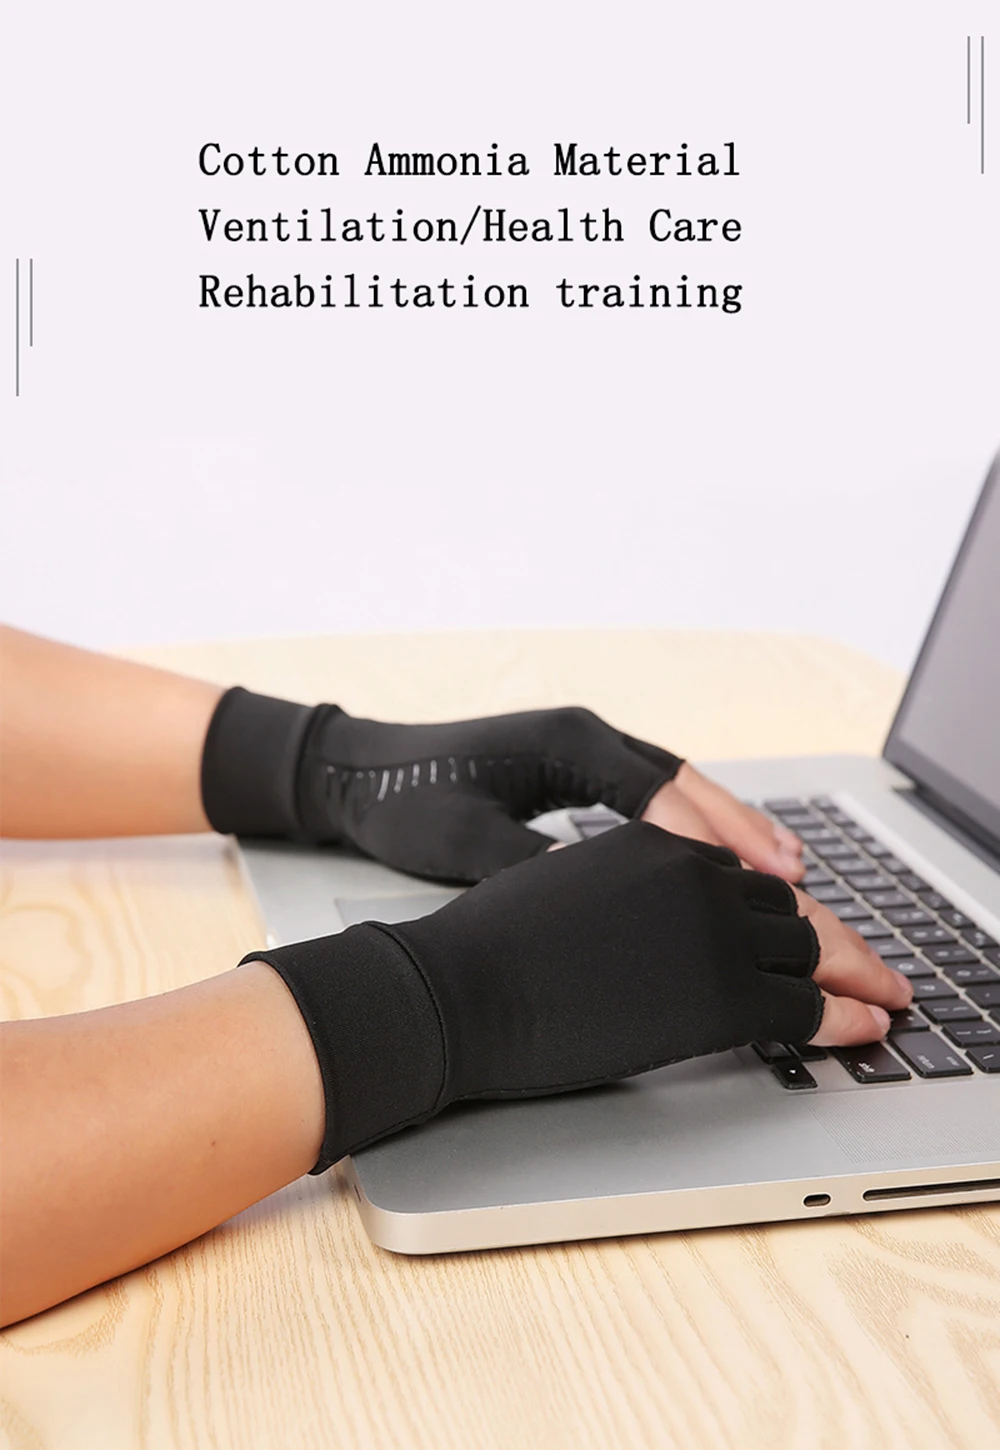 Дышащие мужские перчатки из медного волокна для занятий спортом в помещении, для мужчин и женщин, перчатки для лечения артрита